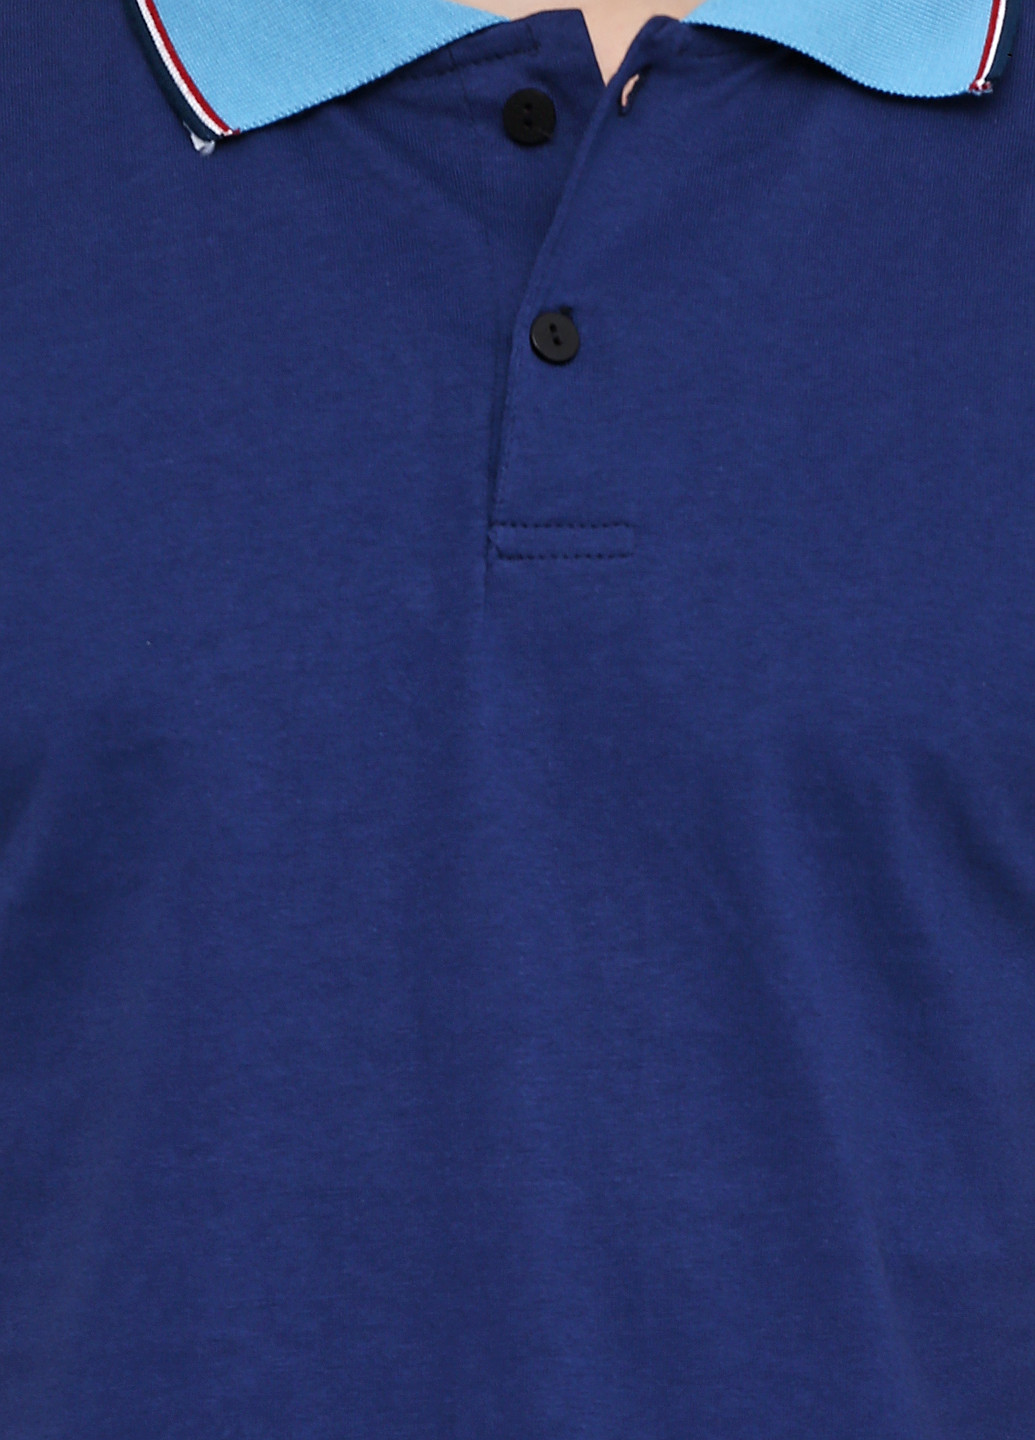 Синяя футболка-поло для мужчин Chiarotex однотонная